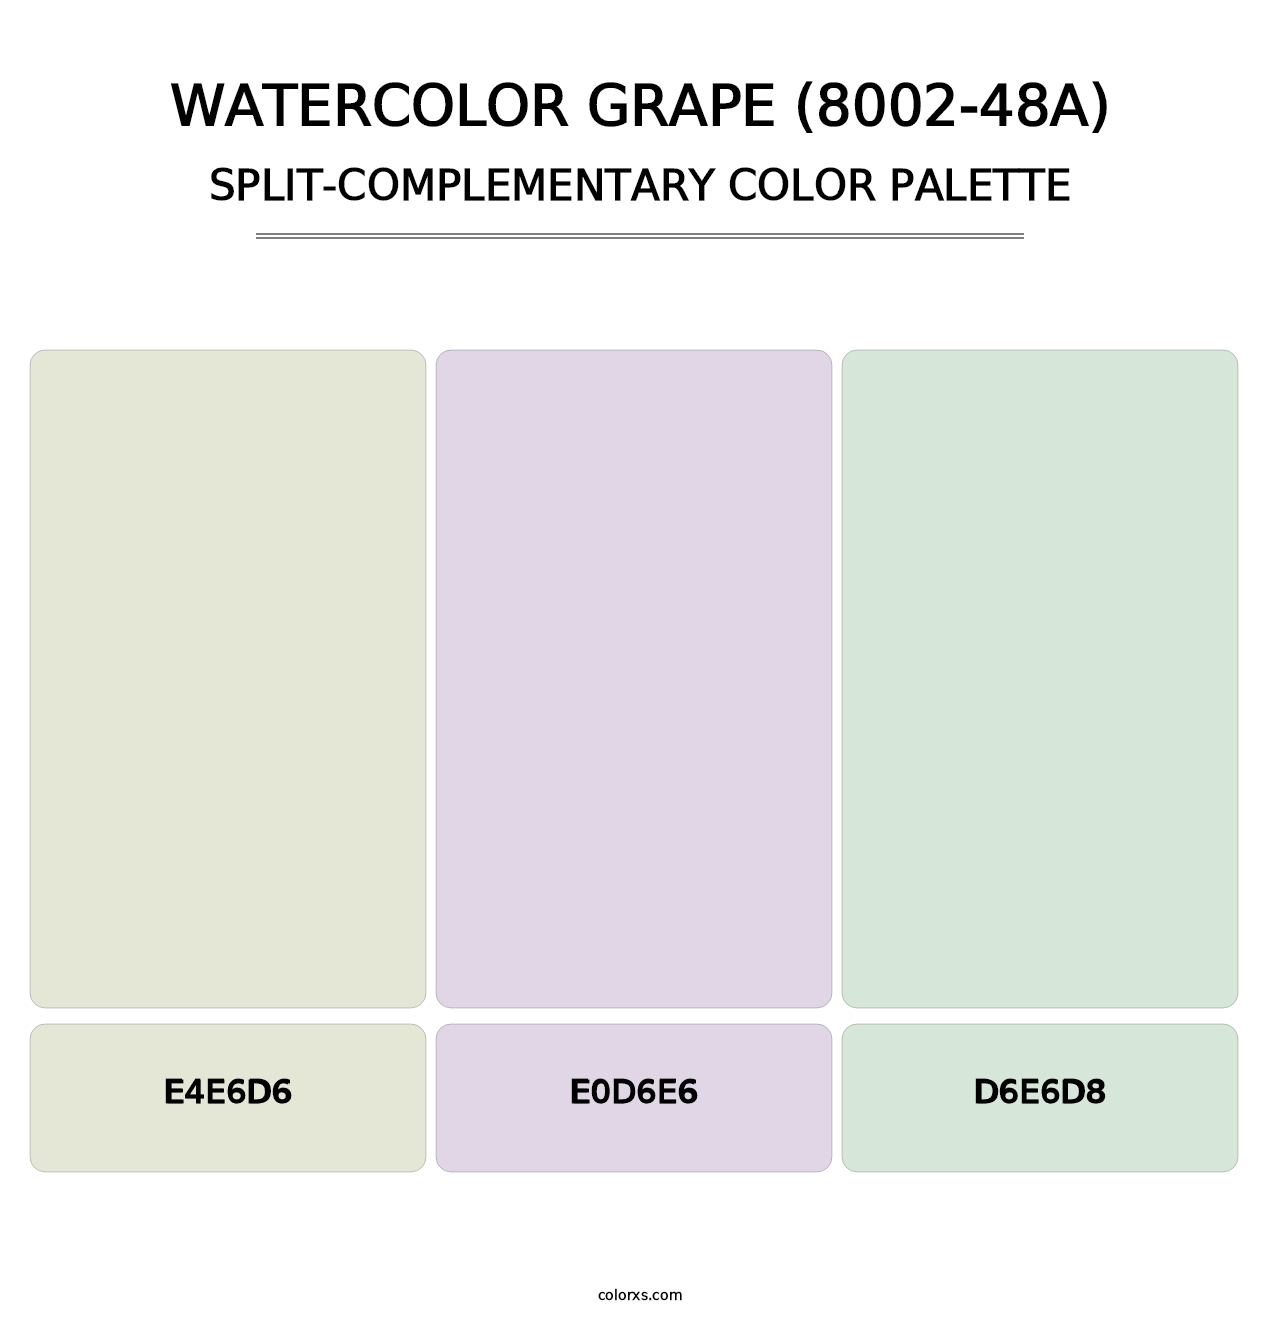 Watercolor Grape (8002-48A) - Split-Complementary Color Palette